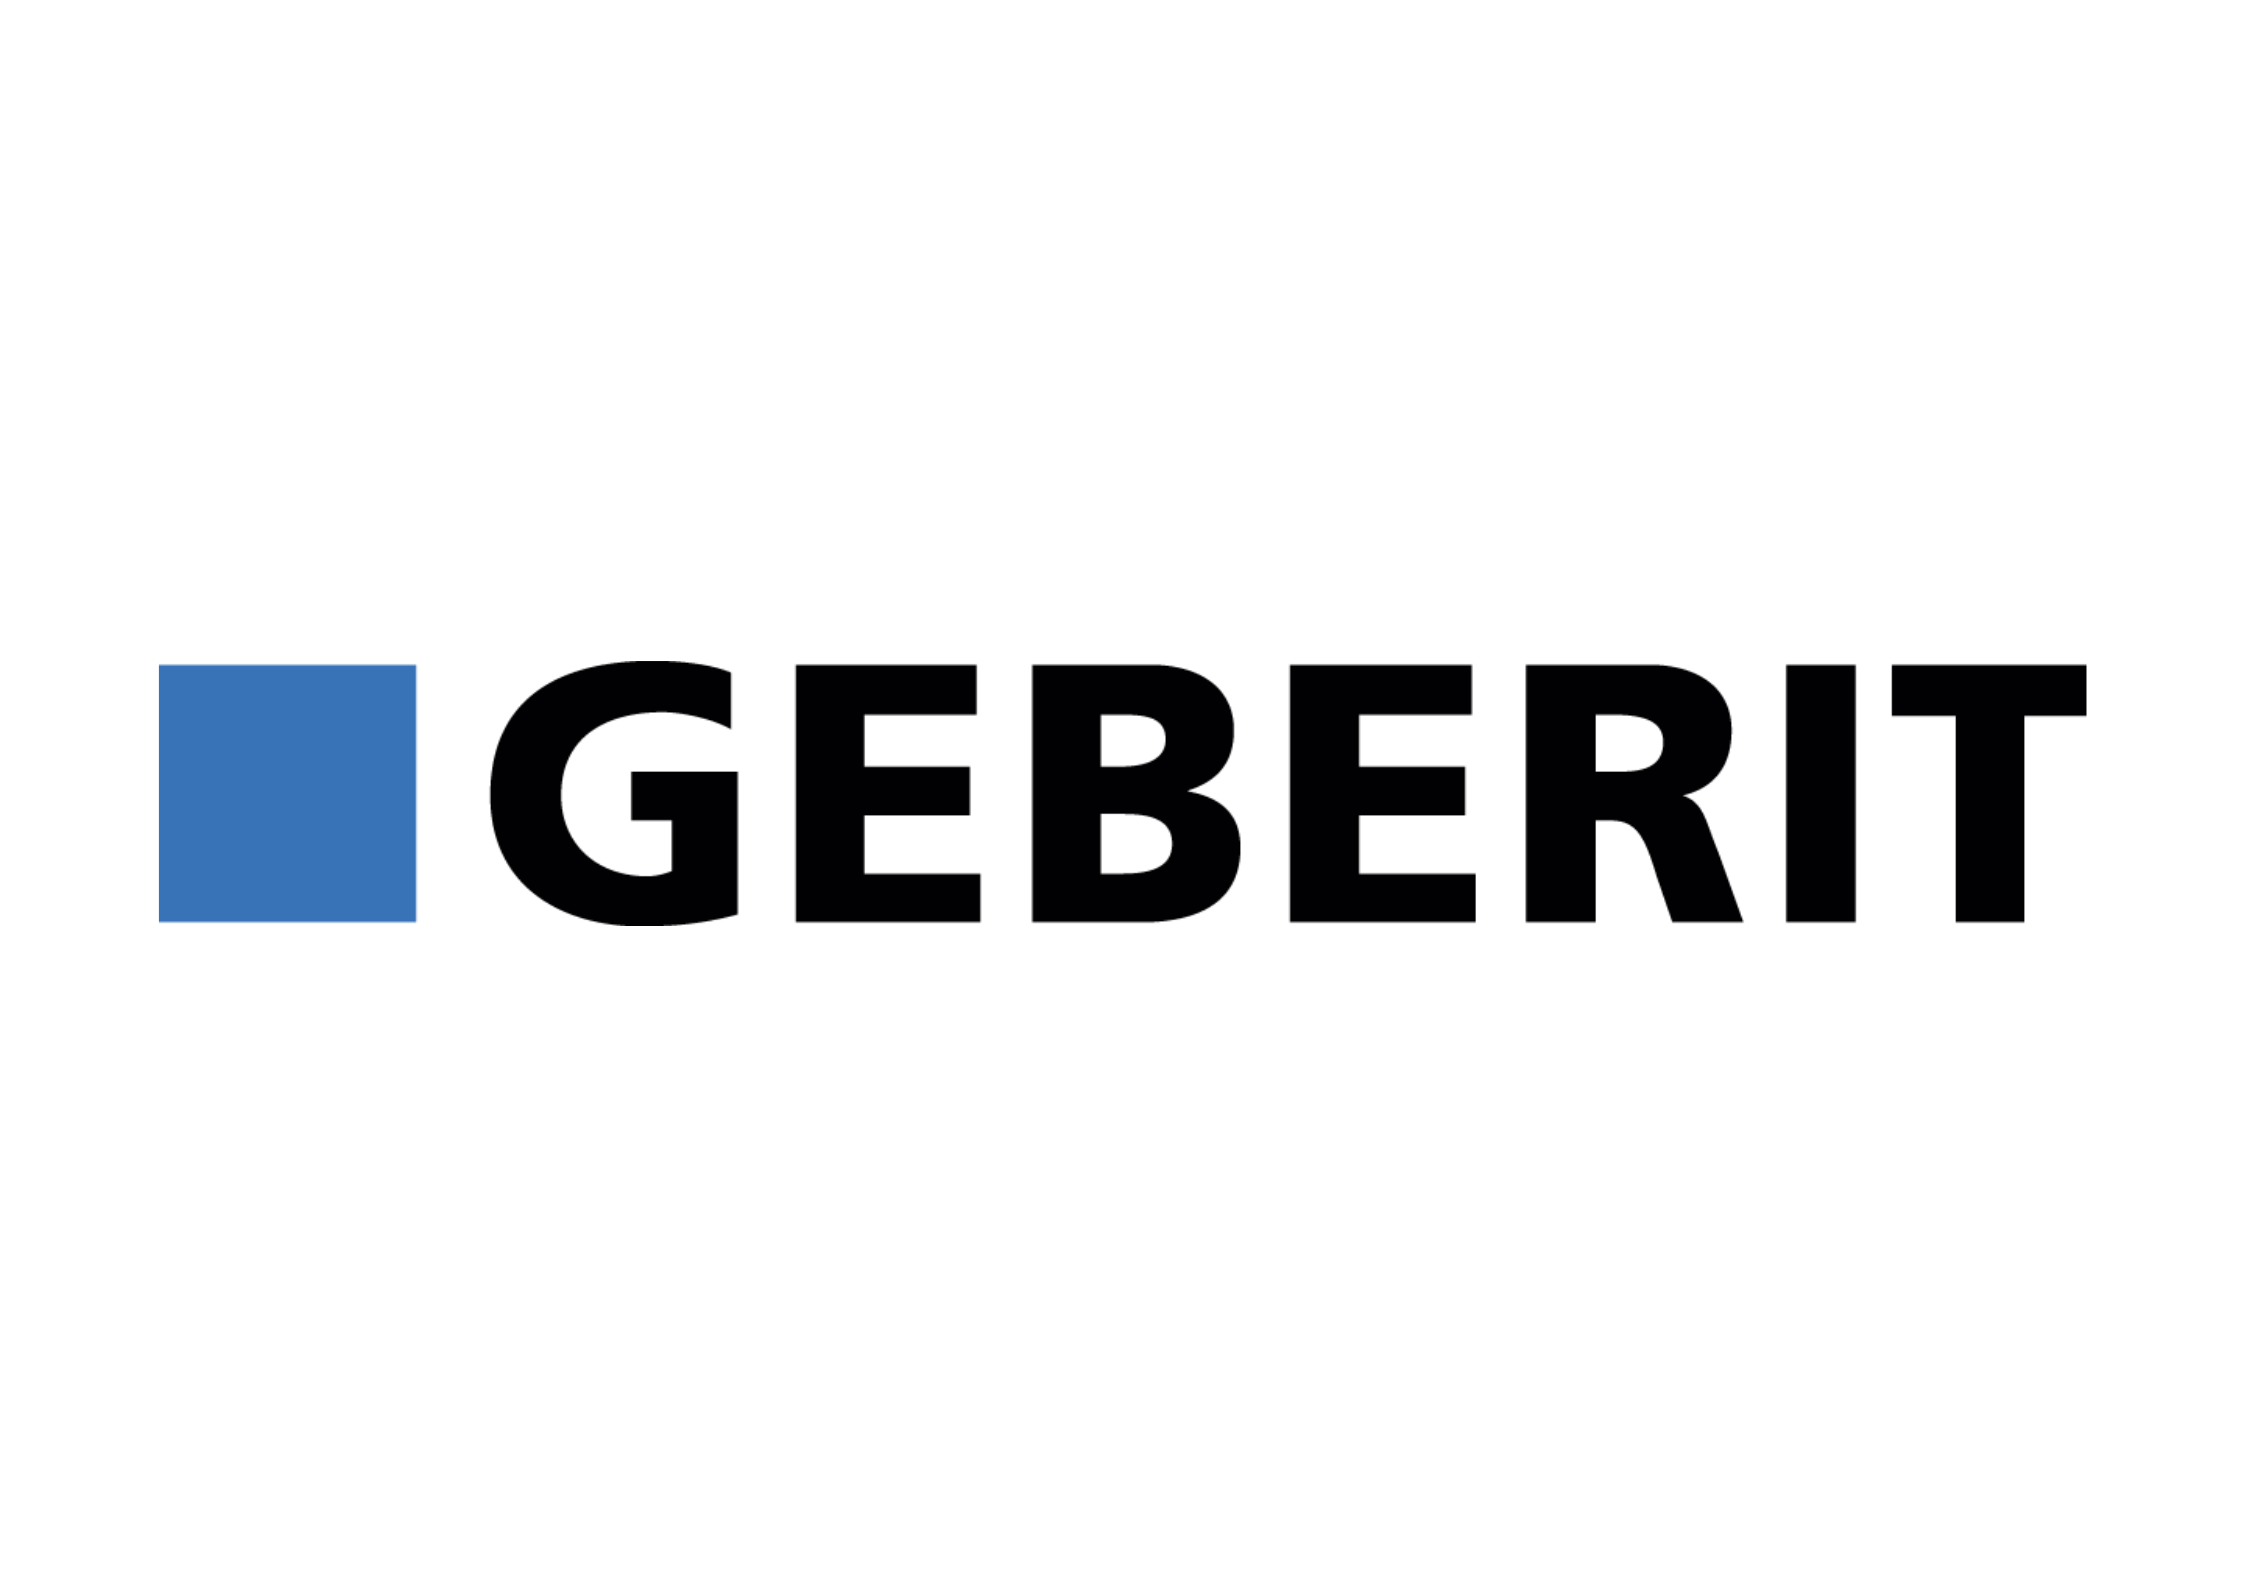 Logo GEBERIT